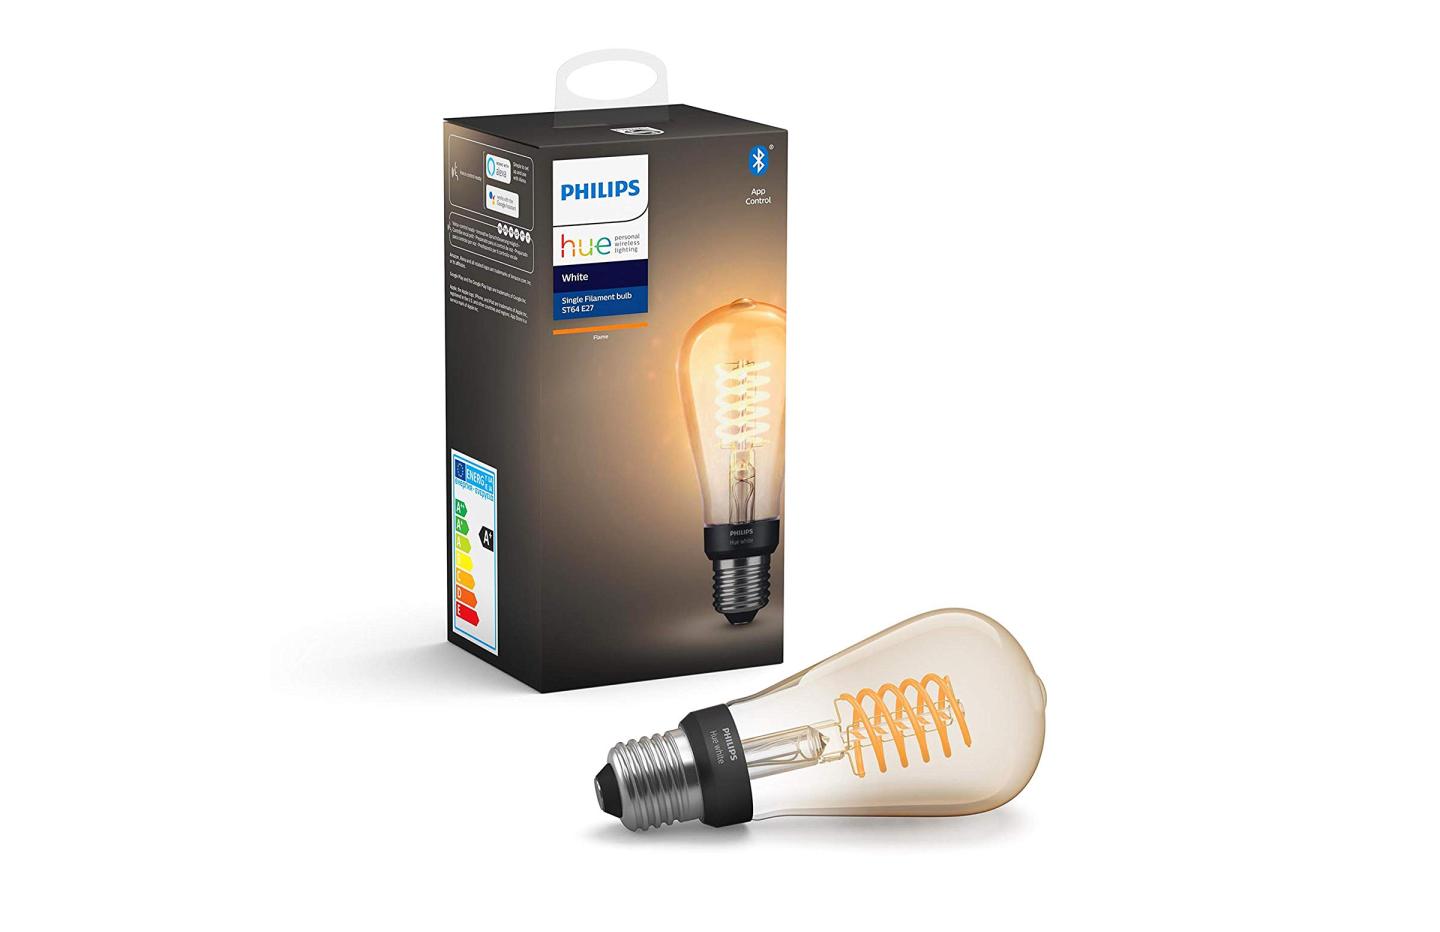 Soldes Philips Hue : Avec ce kit de démarrage qui contient trois ampoules  connectées à -44%, vous allez pouvoir créer de belles ambiances lumineuses  pour pas trop cher ! 